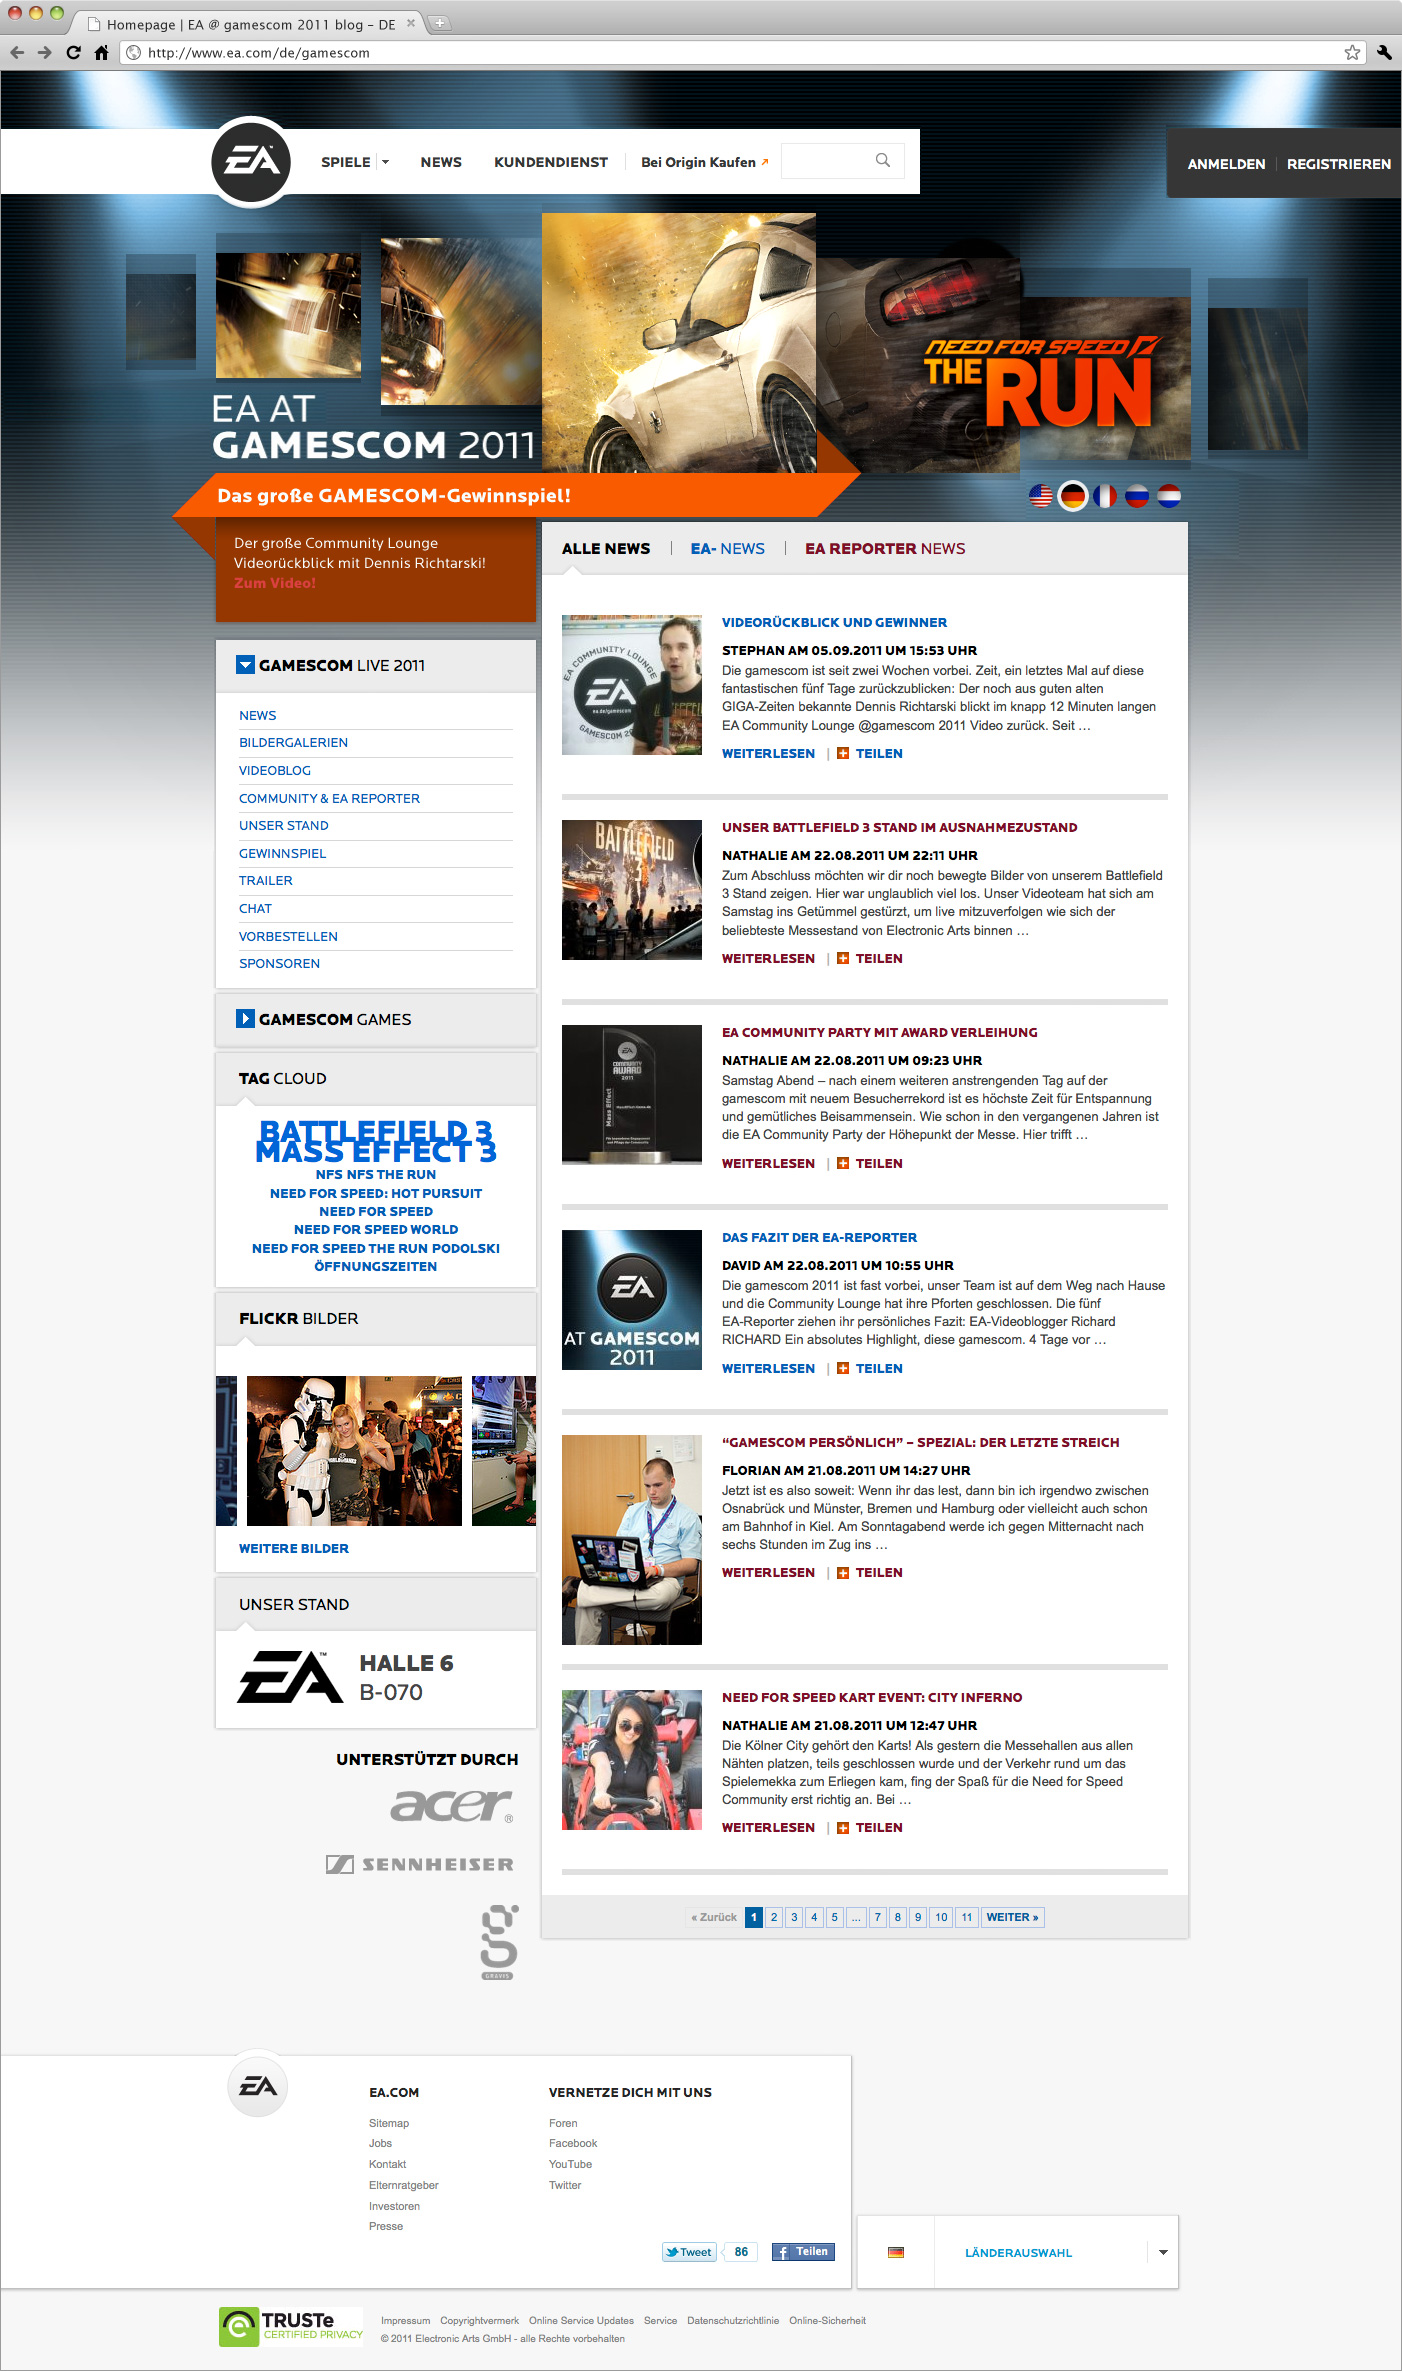 EA-at-gamescom-2011-Screen-Webdesign: Webdesign der von okamo aus Berlin gestalteten Homepage des Messewebauftritts von EA Electronic Arts auf der gamescom 2011 in Köln mit prominentem Headerbild und der zentralen Blog-Ansicht mit minutenaktuellen News von der Messe